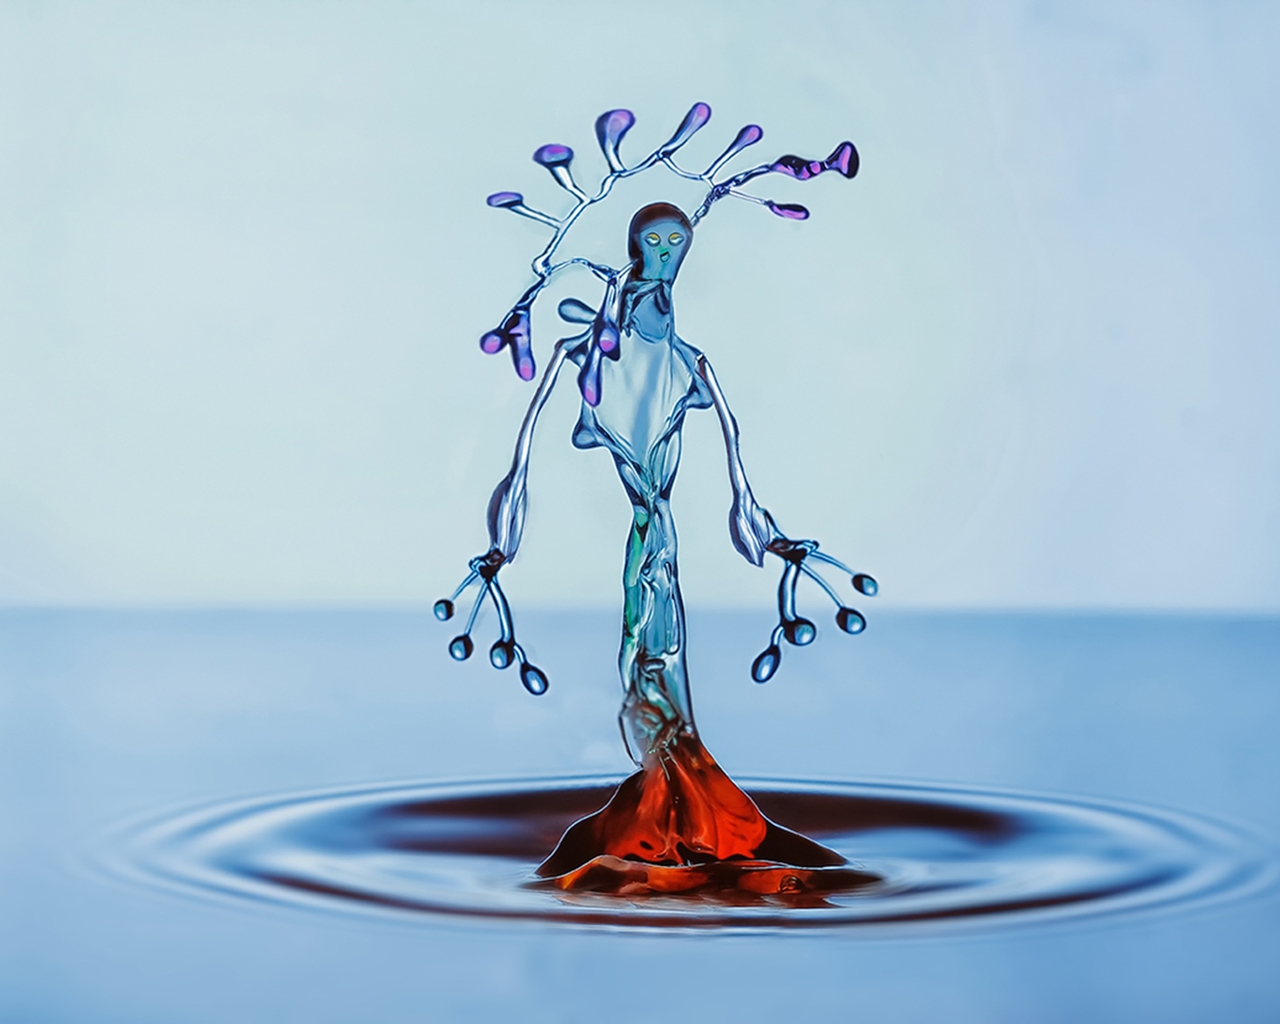 Water Splash Figurine for 1280 x 1024 resolution